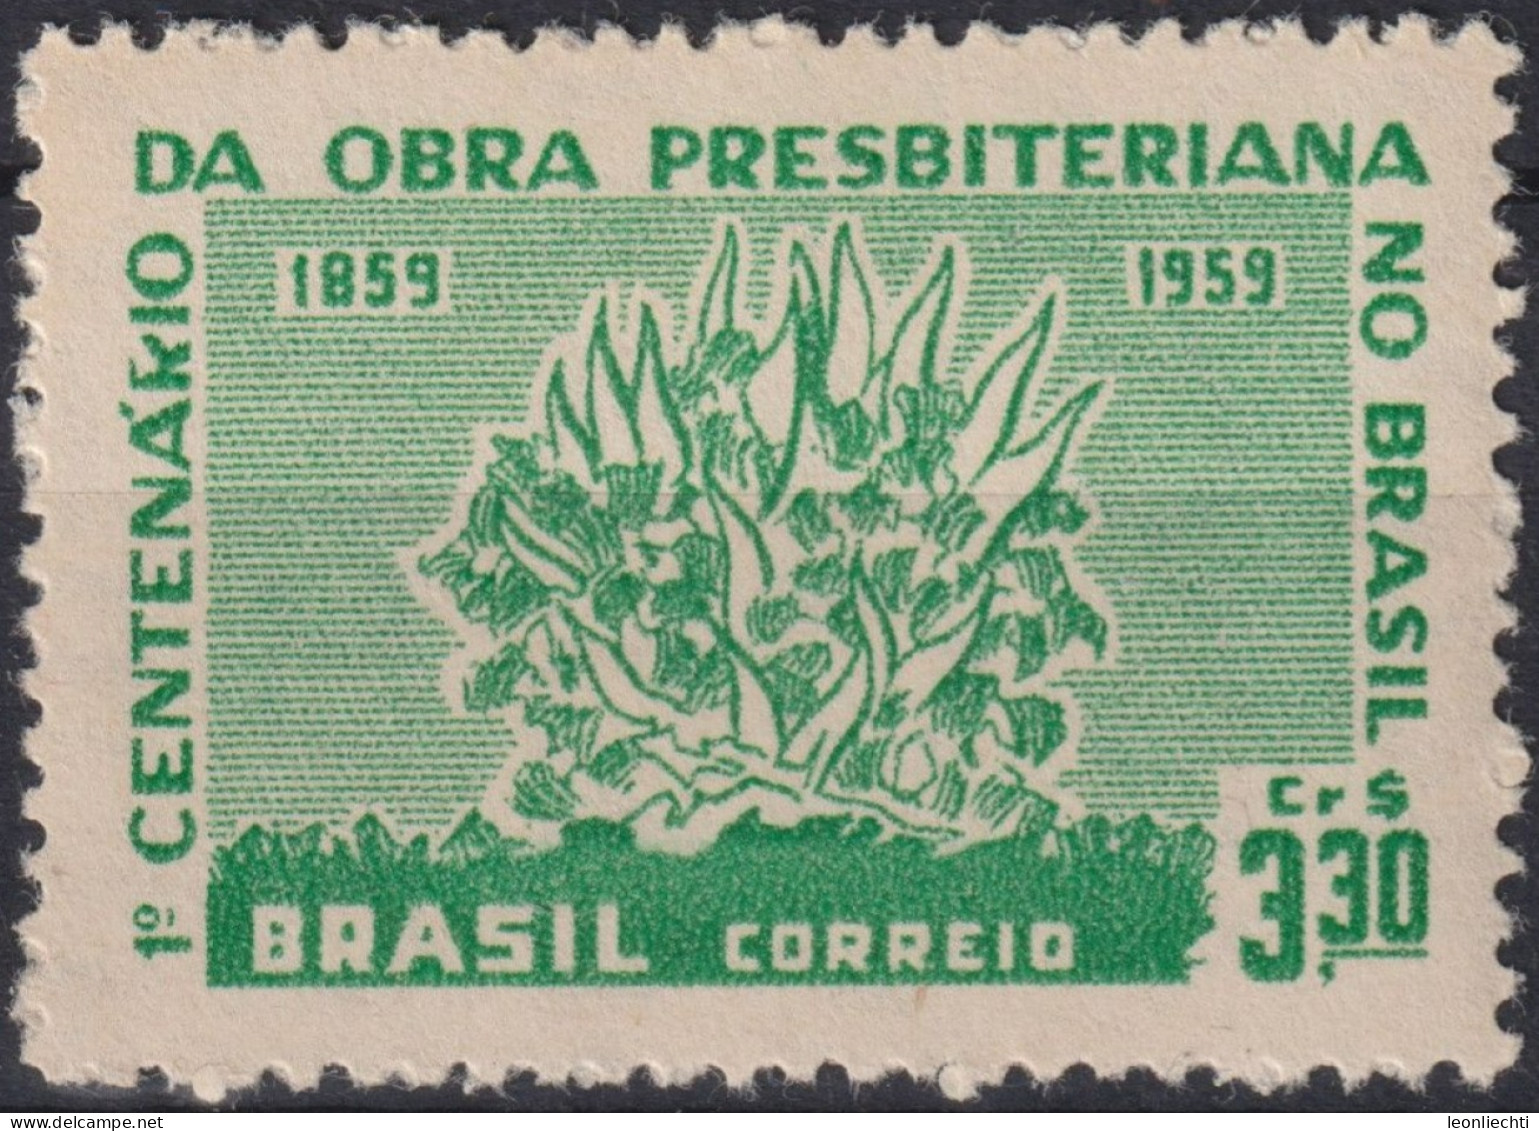 1959 Brasilien ** Mi:BR 970, Sn:BR 902, Yt:BR 687, Burning Bush, Brennender Busch - Ungebraucht